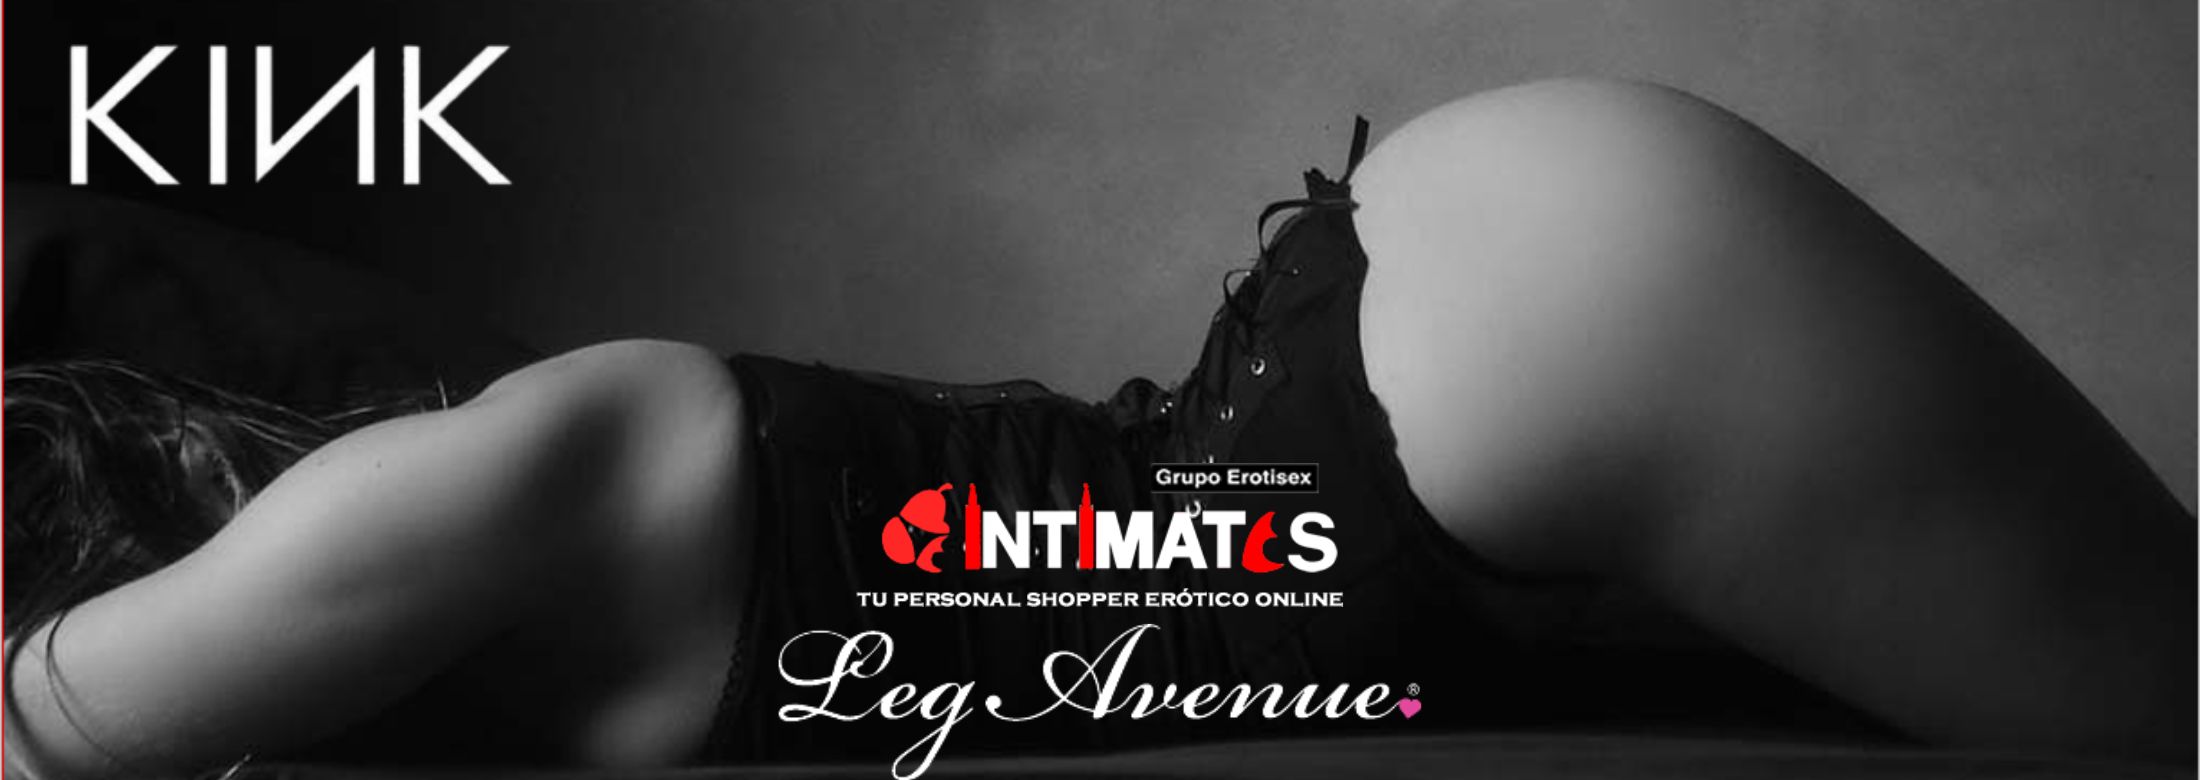 KINK BDSM lingerie & accessories by Leg Avenue, que puedes adquirir en intimates.es "Tu Personal Shopper Erótico Online"